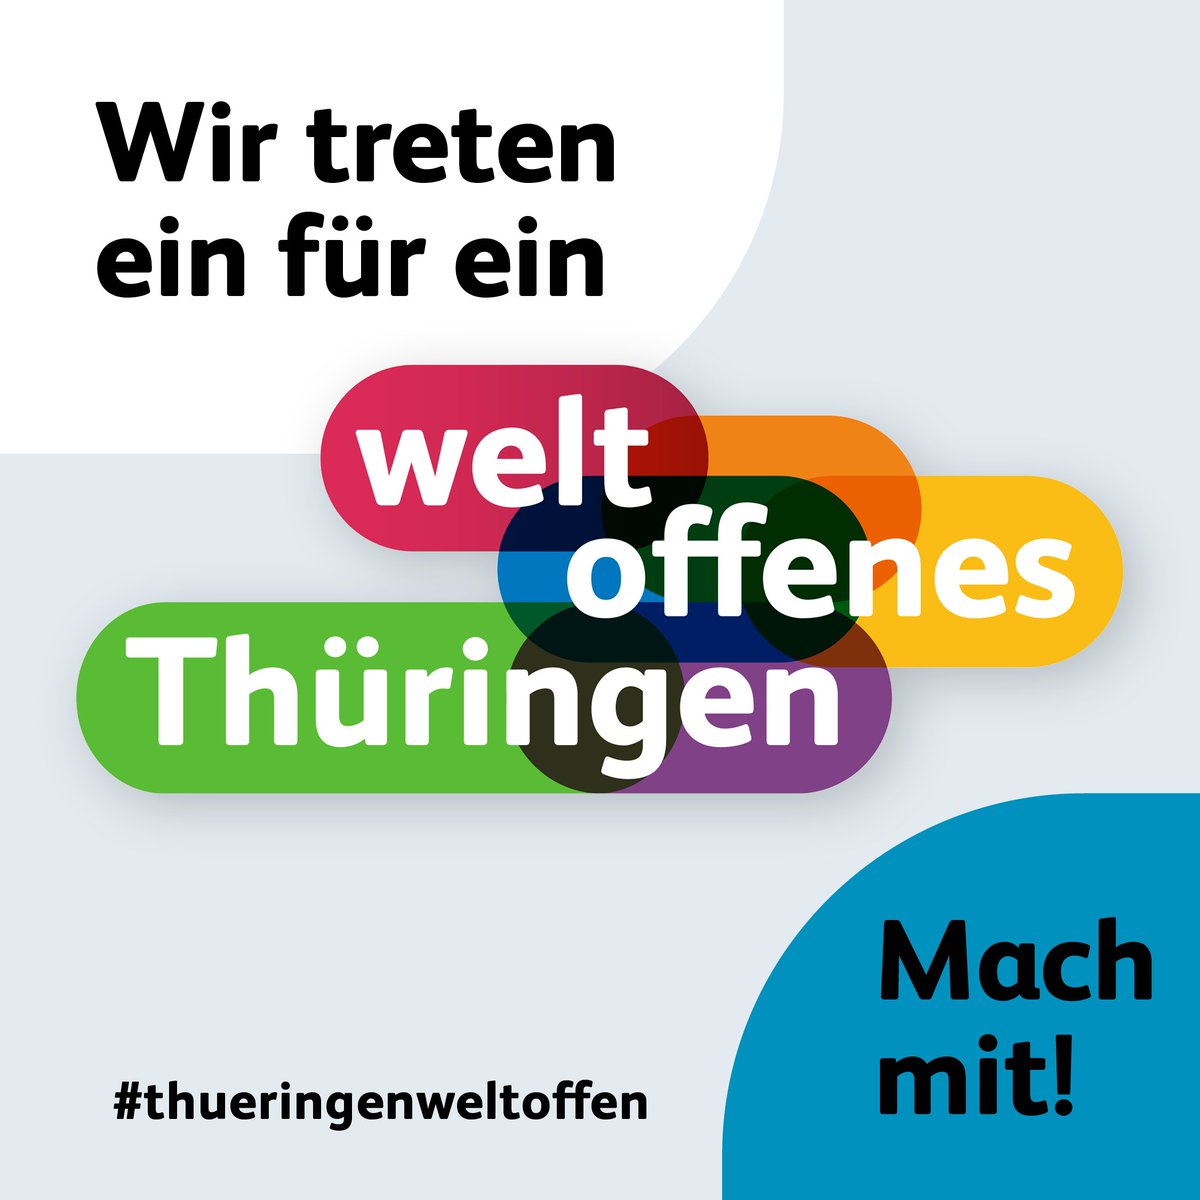 Das KomRex unterstützt die Initiative #WeltoffenesThüringen! Mehr Infos unter: thueringen-weltoffen.de